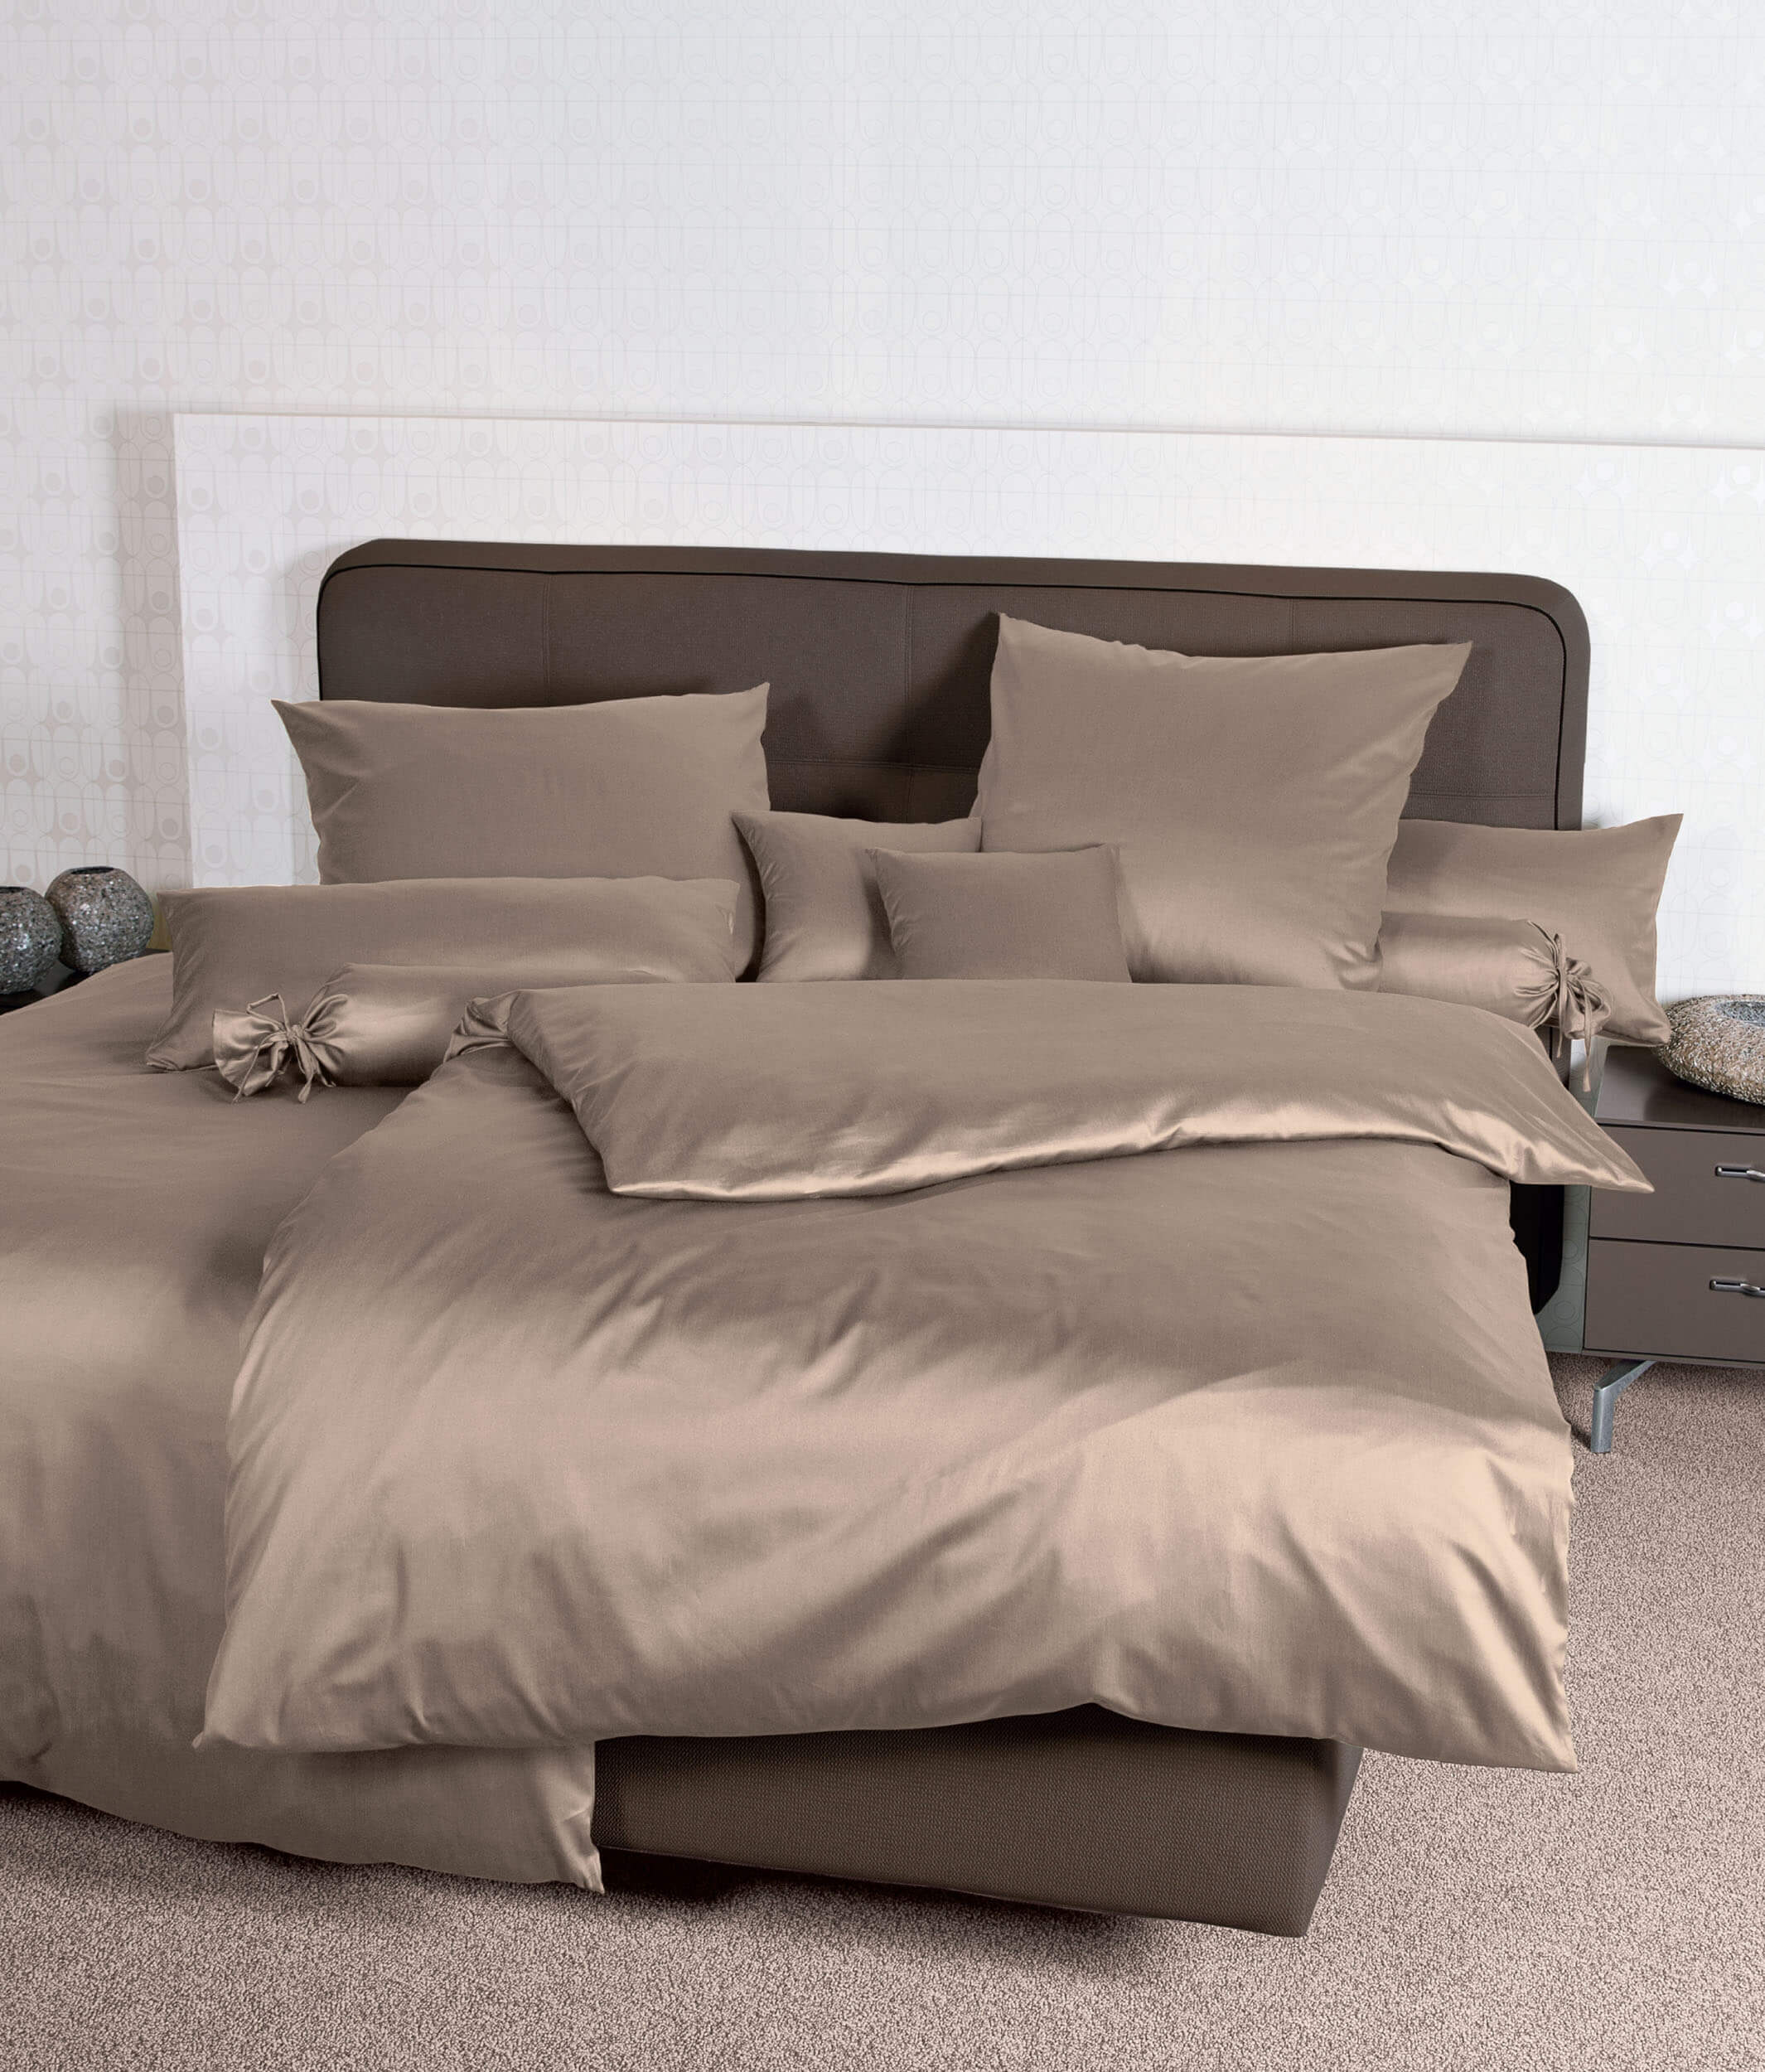 Немецкое постельное белье Colors Taupe ☞ Размер пододеяльника: 155 x 200 см ☞ Размер простыни: Без простыни ☞ Размер наволочек: 50 x 70 см (1 шт.)